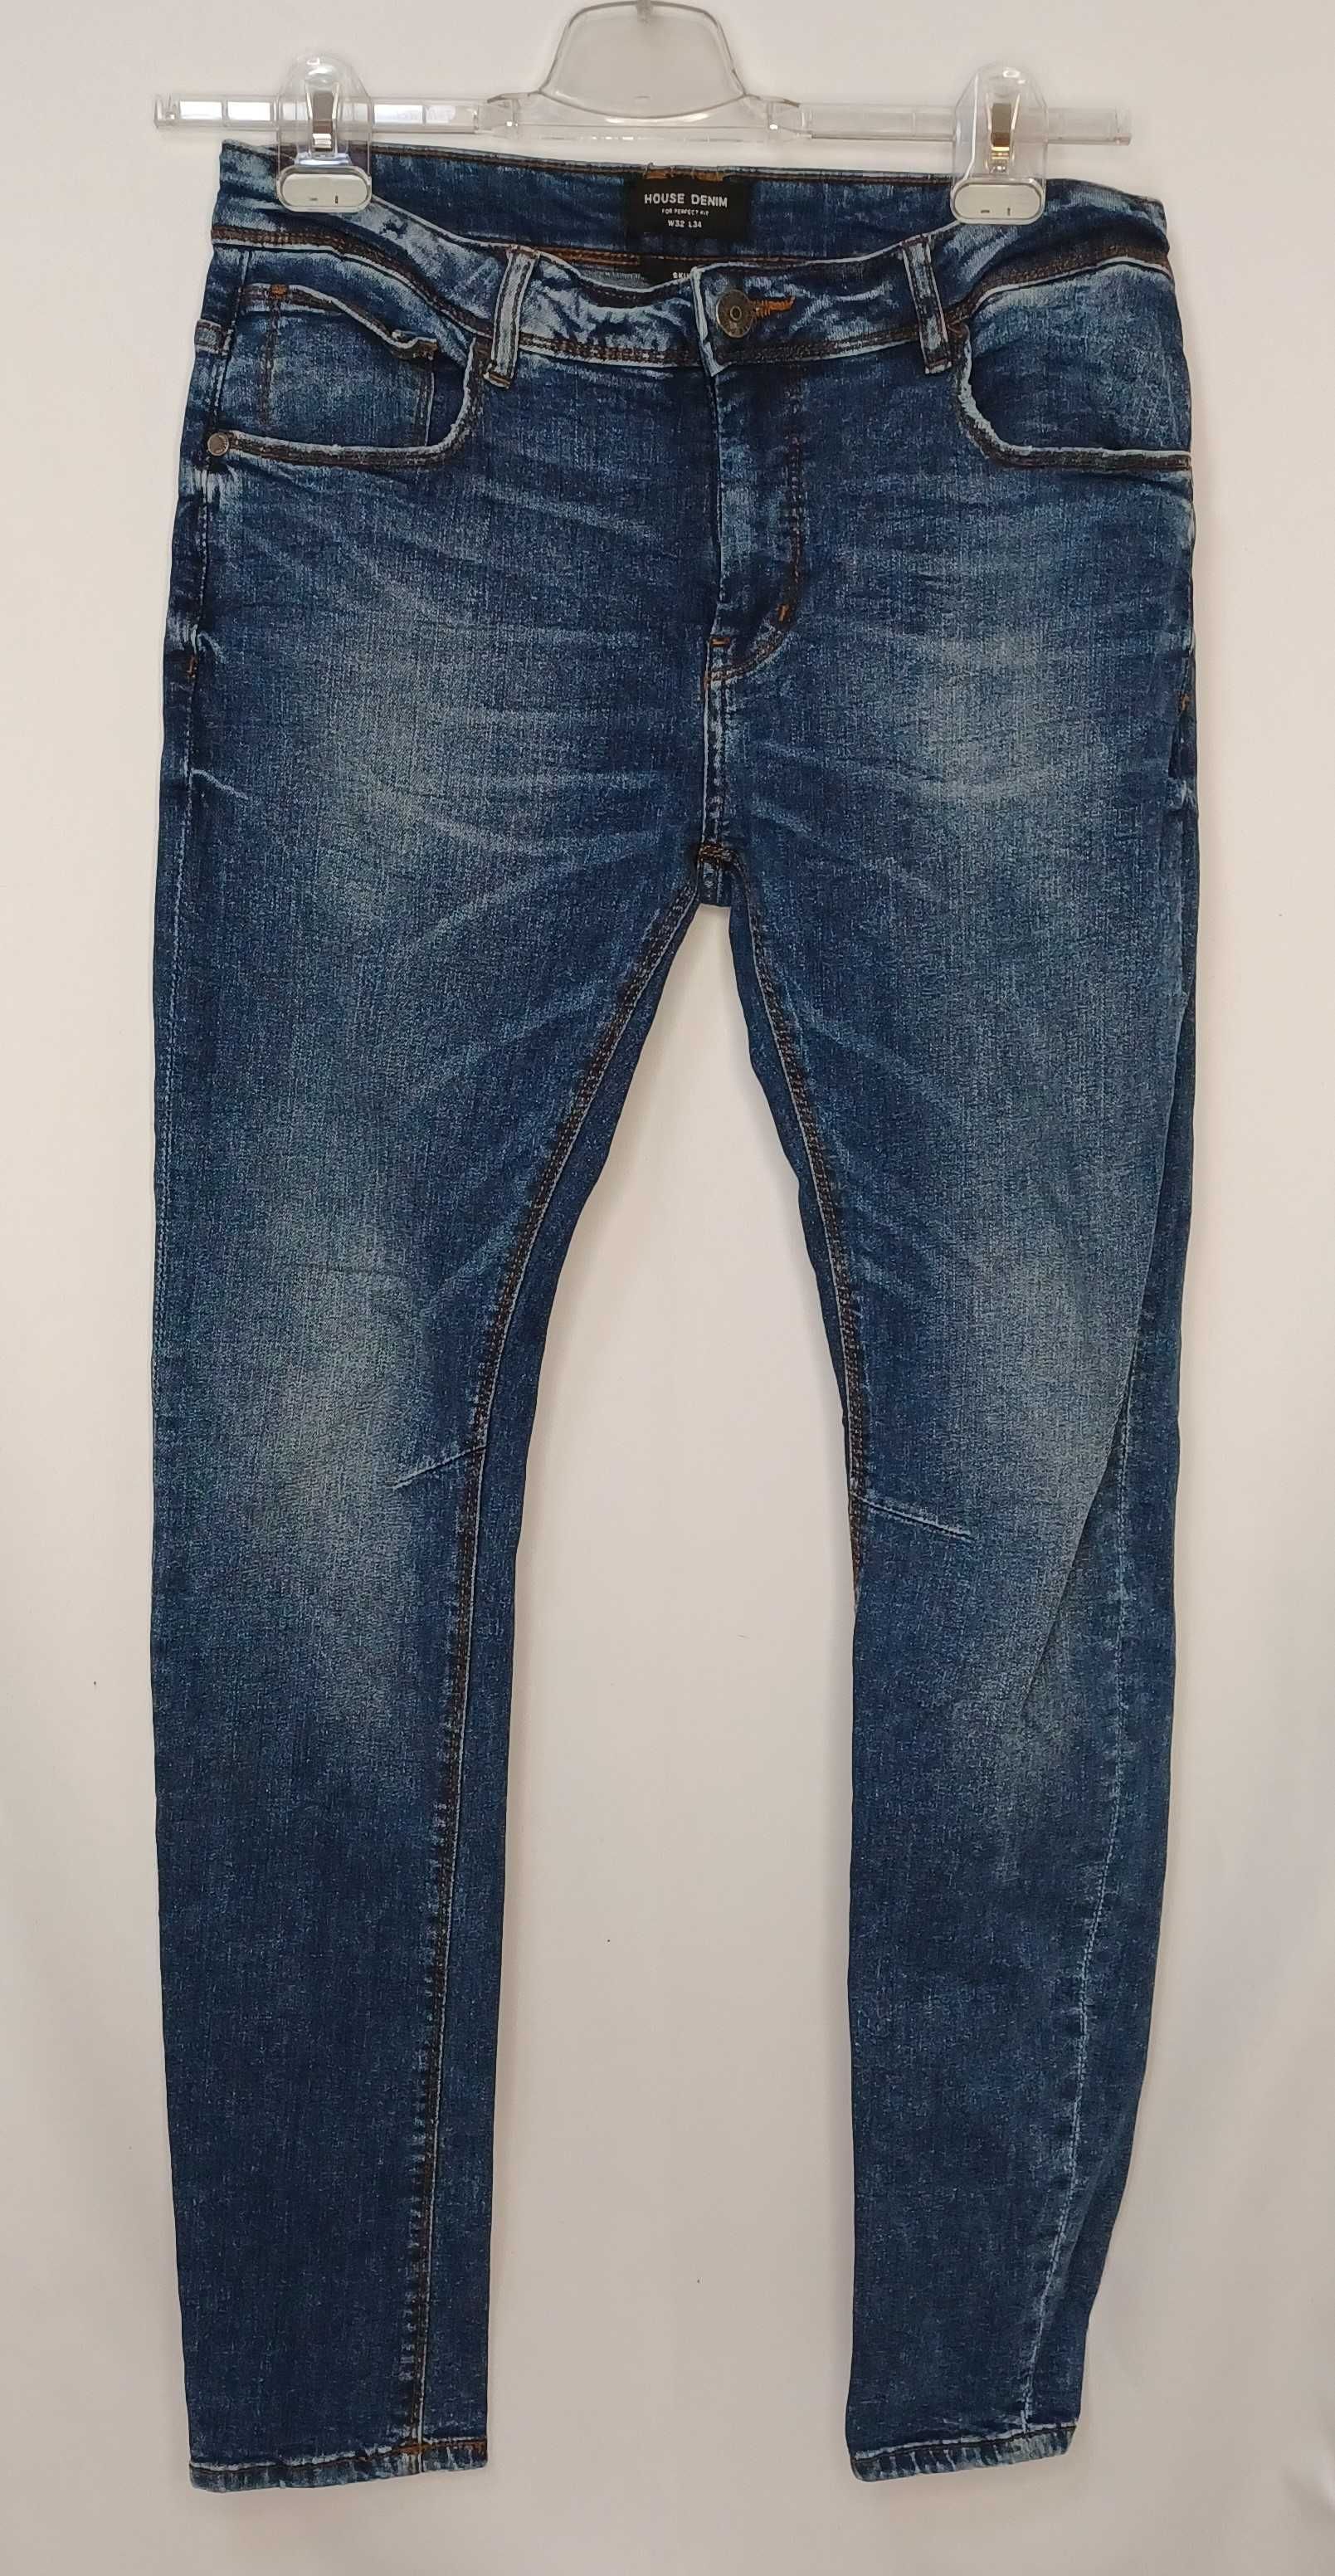 Spodnie męskie  jeans House Denim//UM_0054